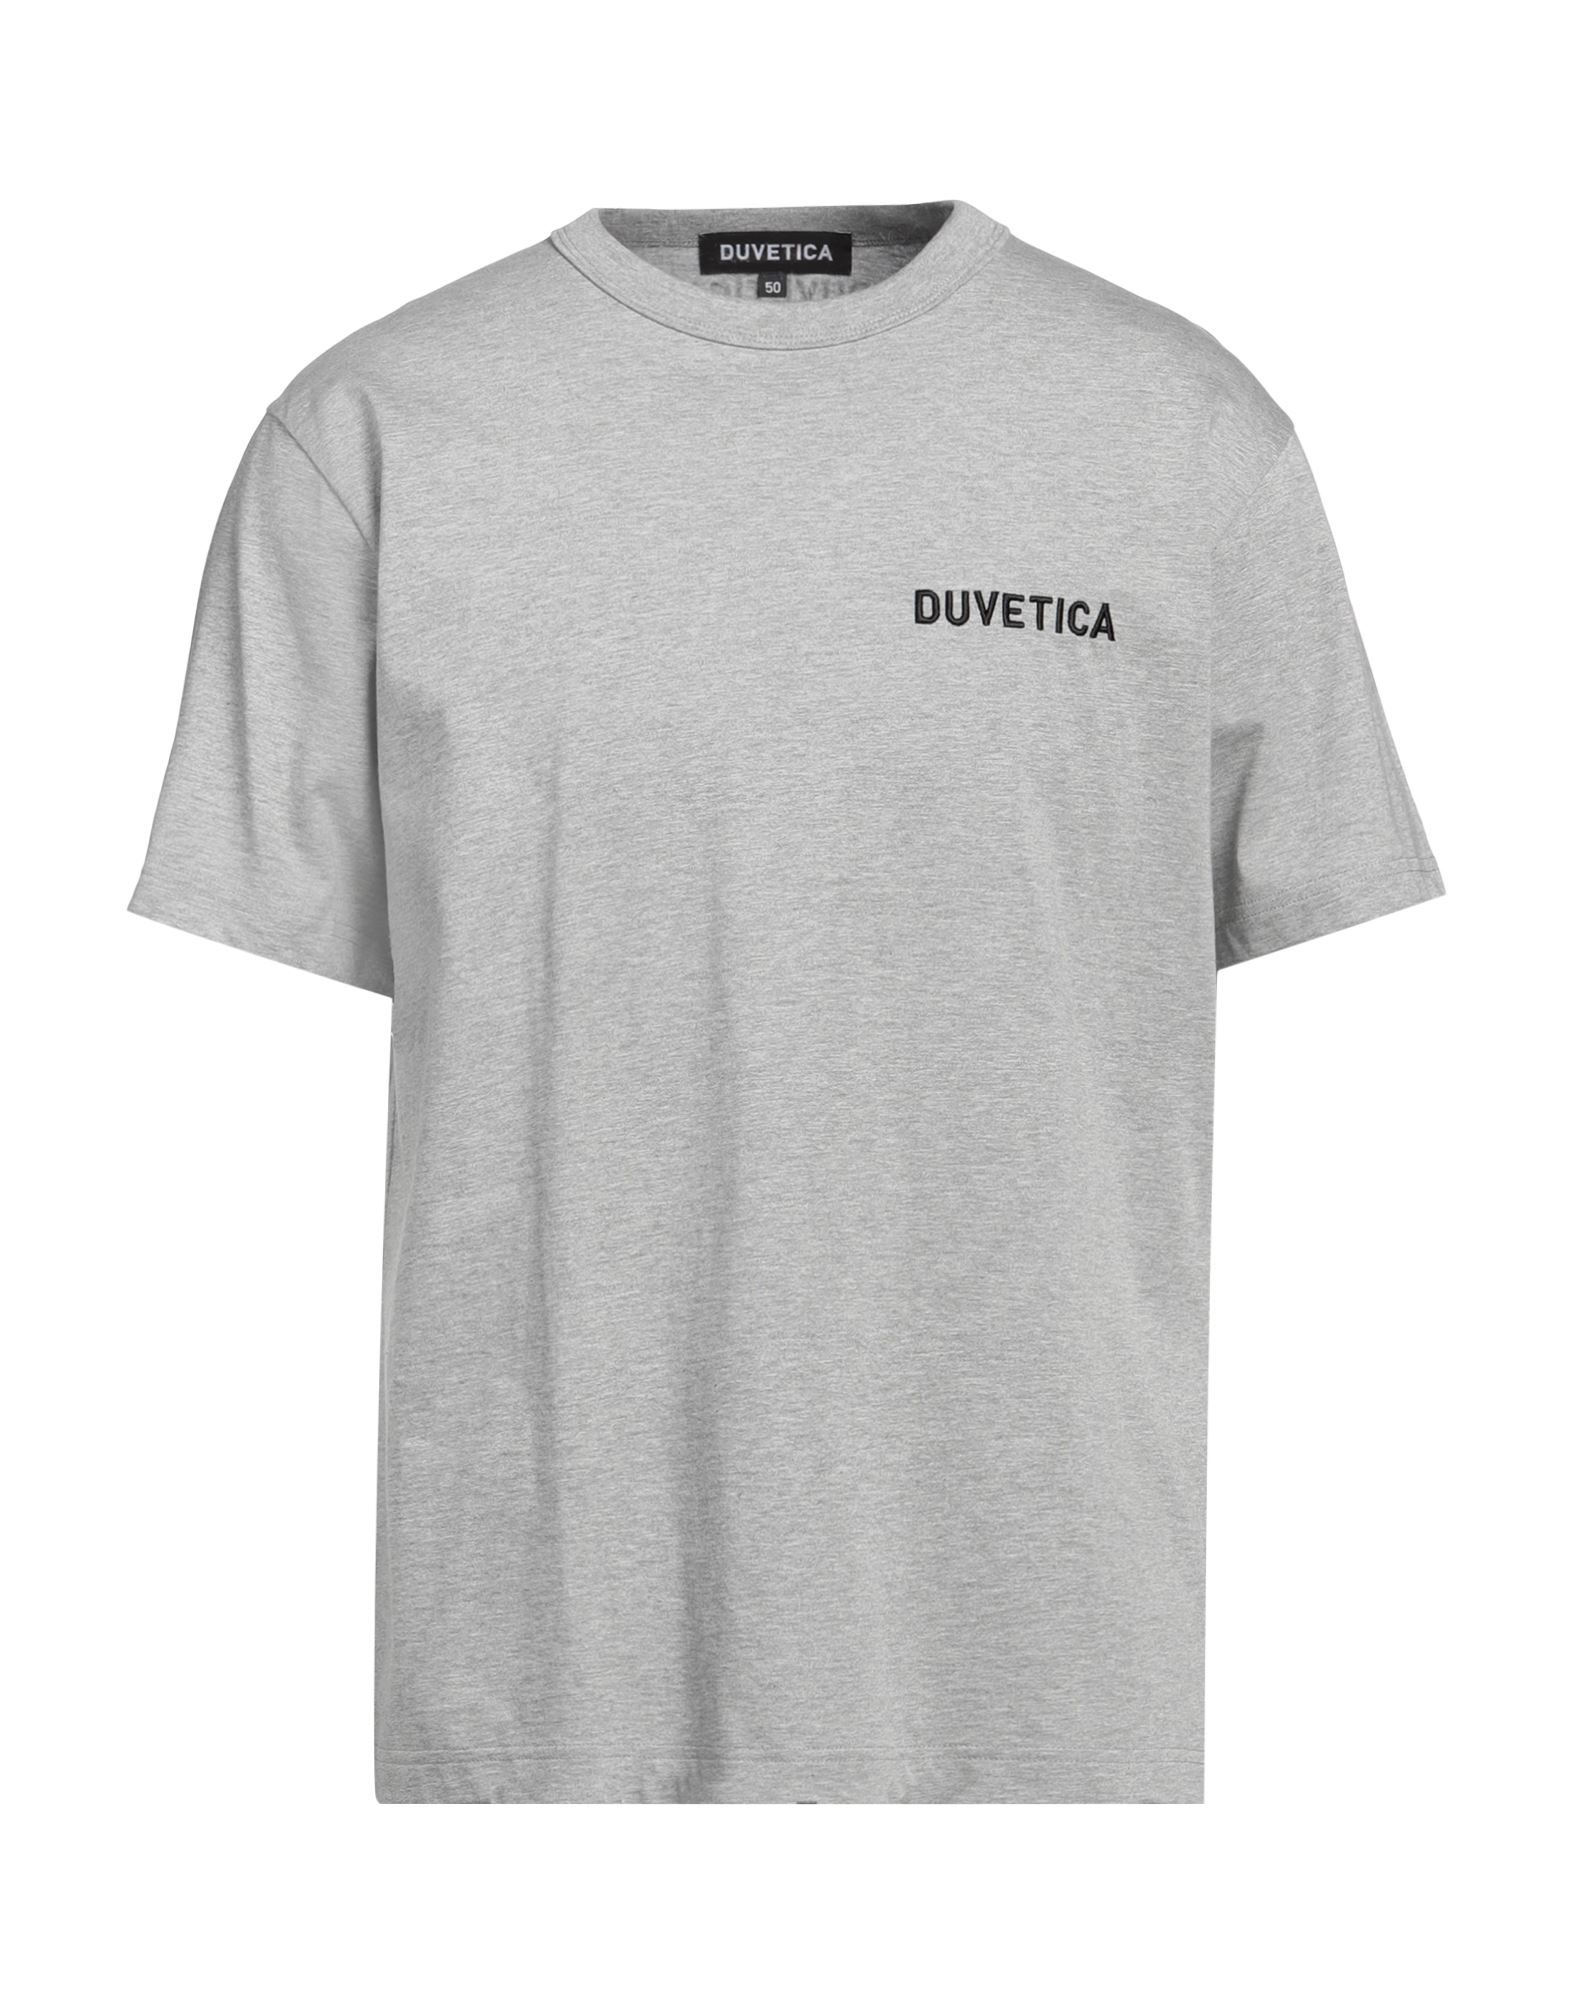 DUVETICA T-shirts Herren Hellgrau von DUVETICA